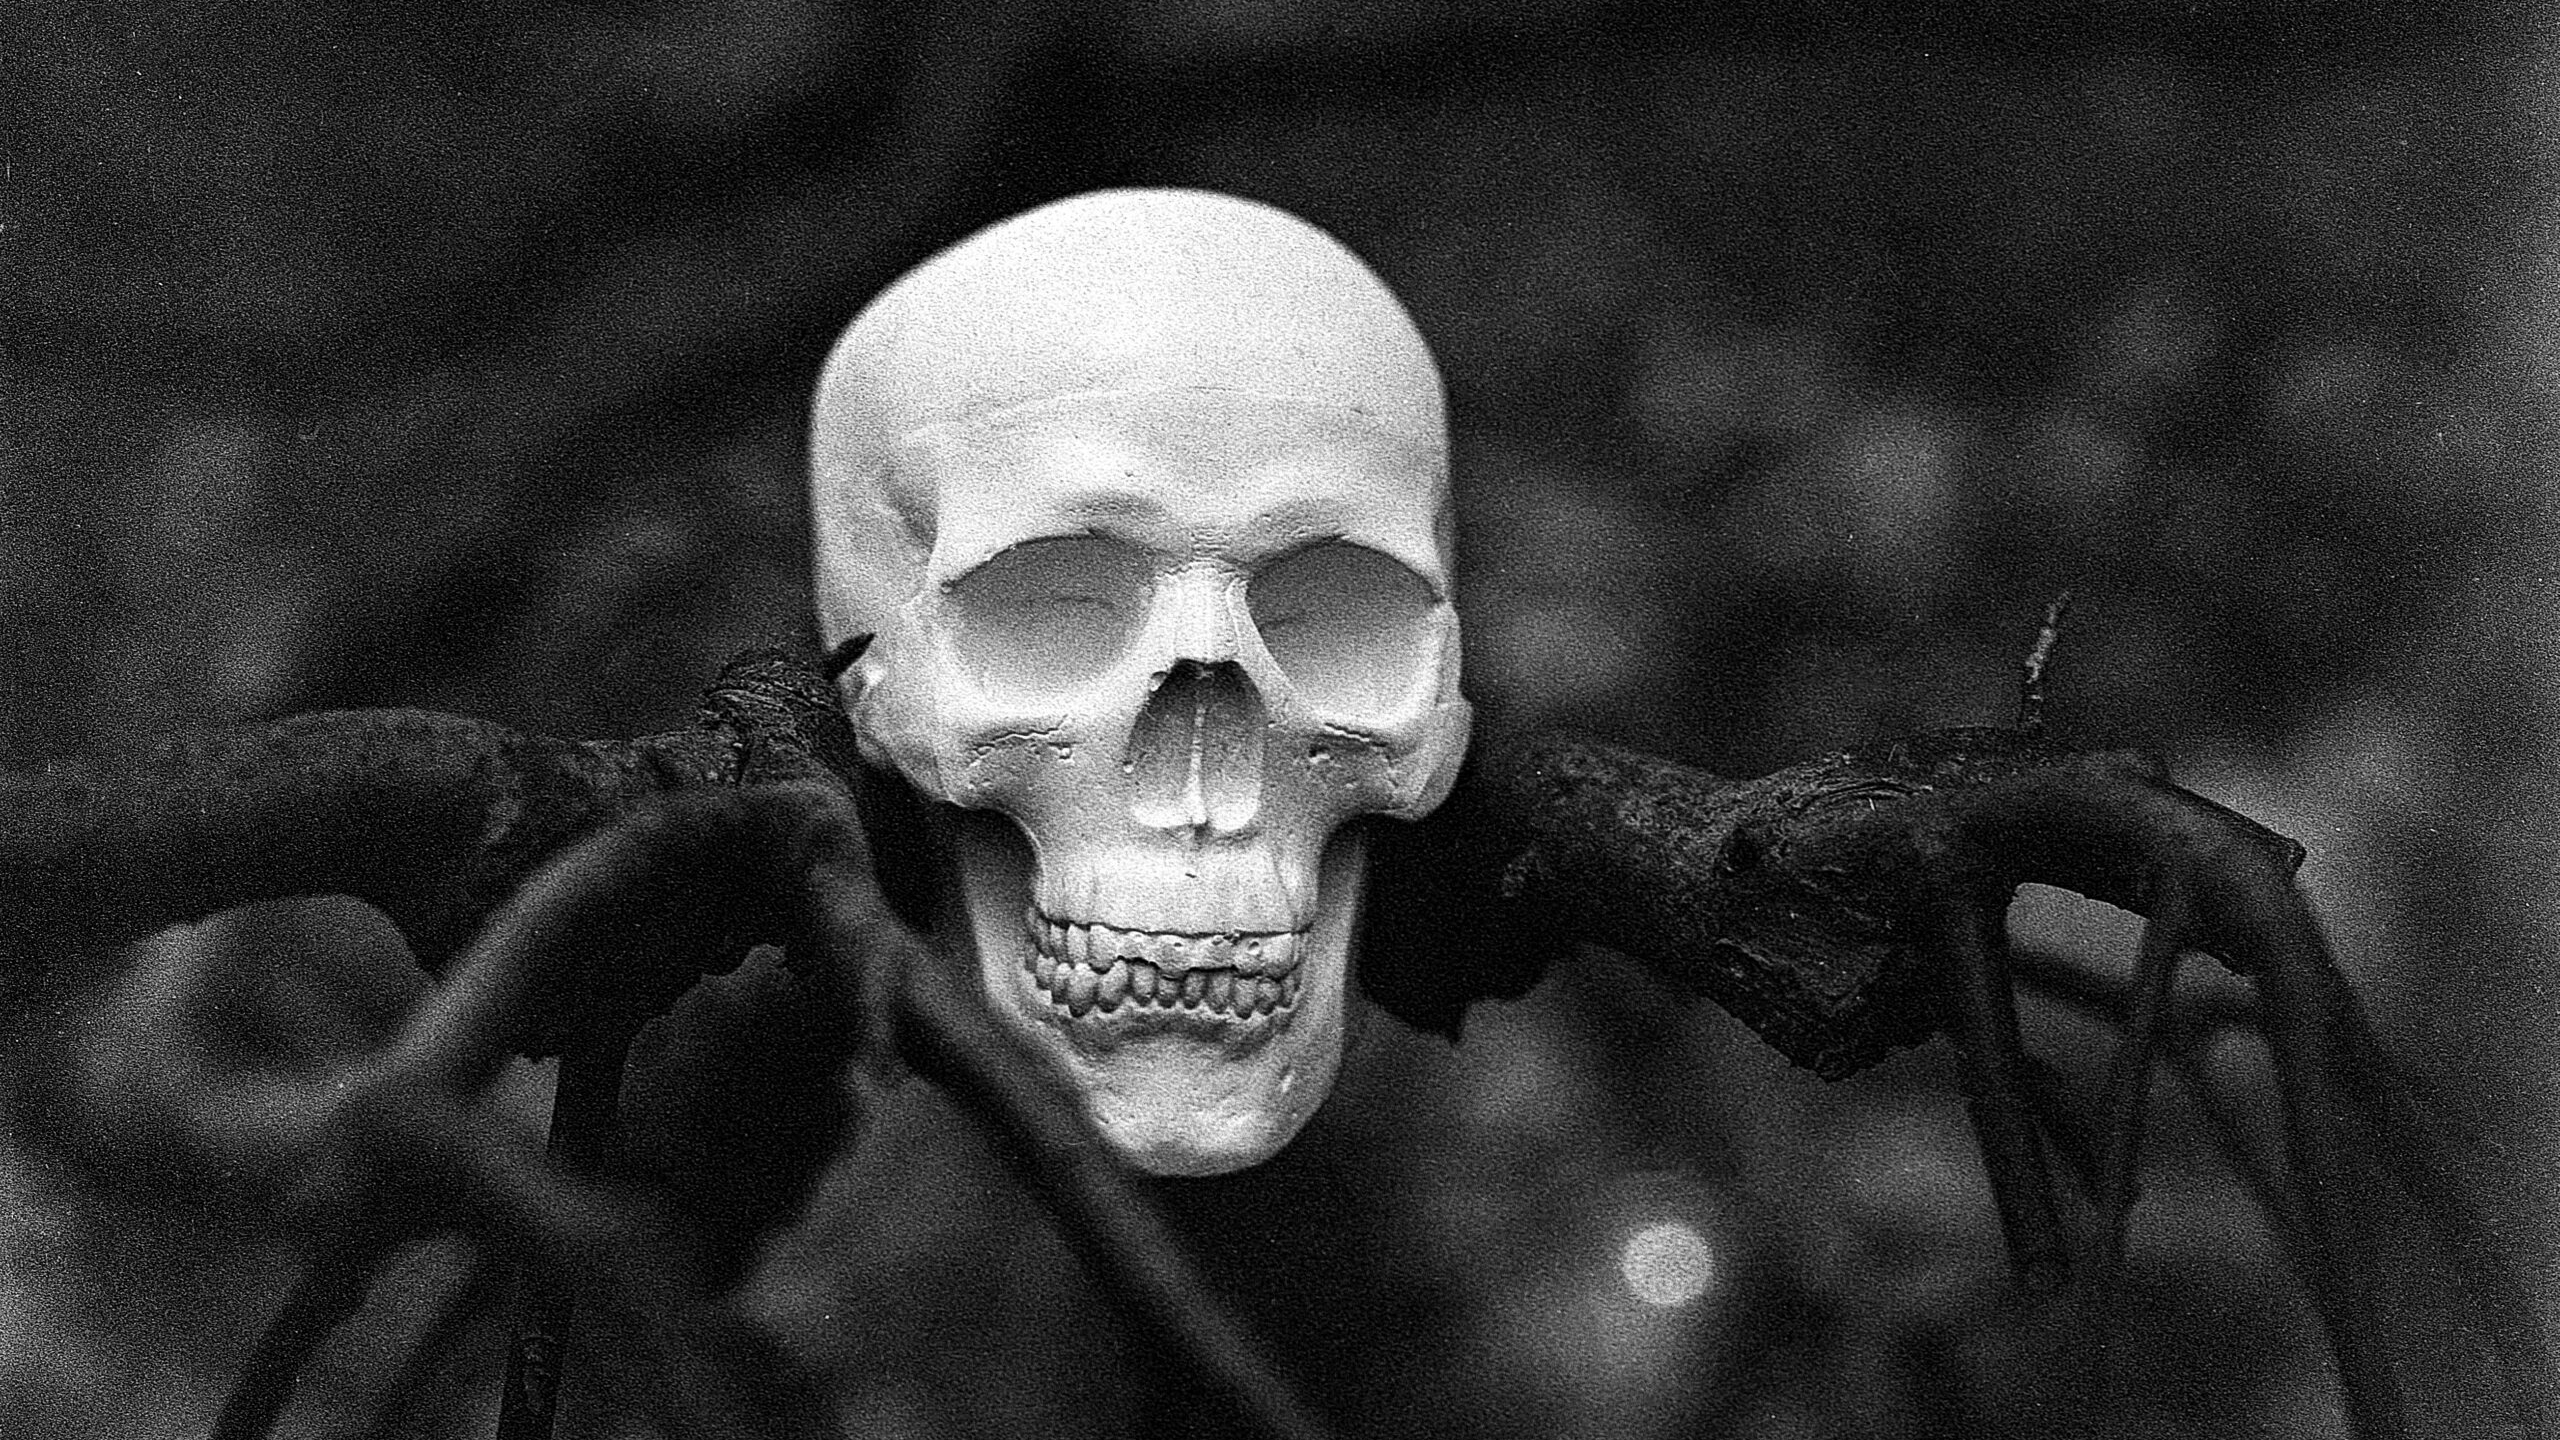 Человеческий скелет в одежде обнаружили в лесу на юге Петербурга